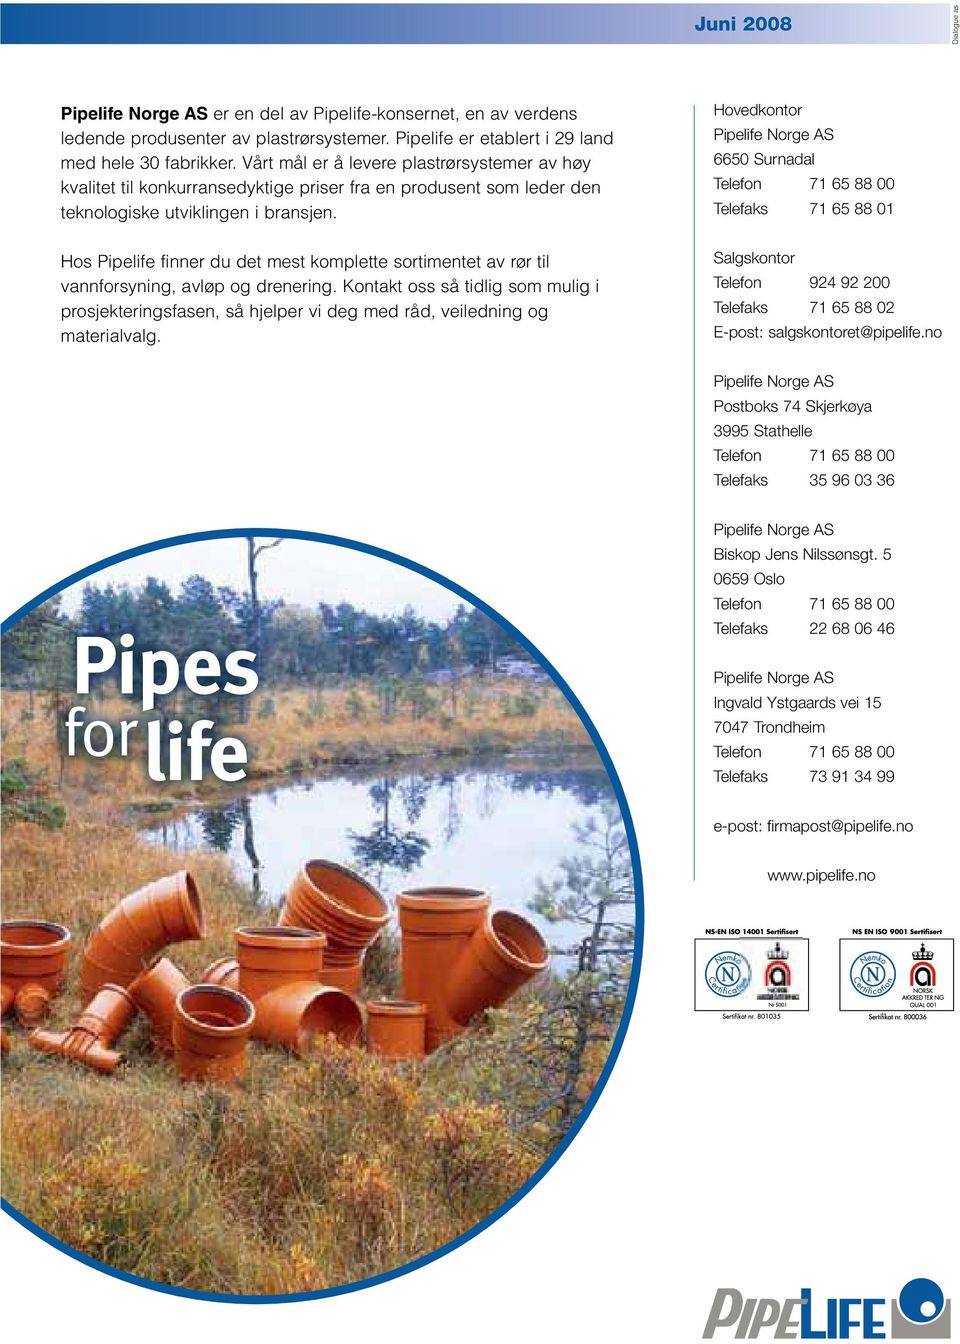 Hos Pipelife finner du det mest komplette sortimentet av rør til vannforsyning, avløp og drenering.